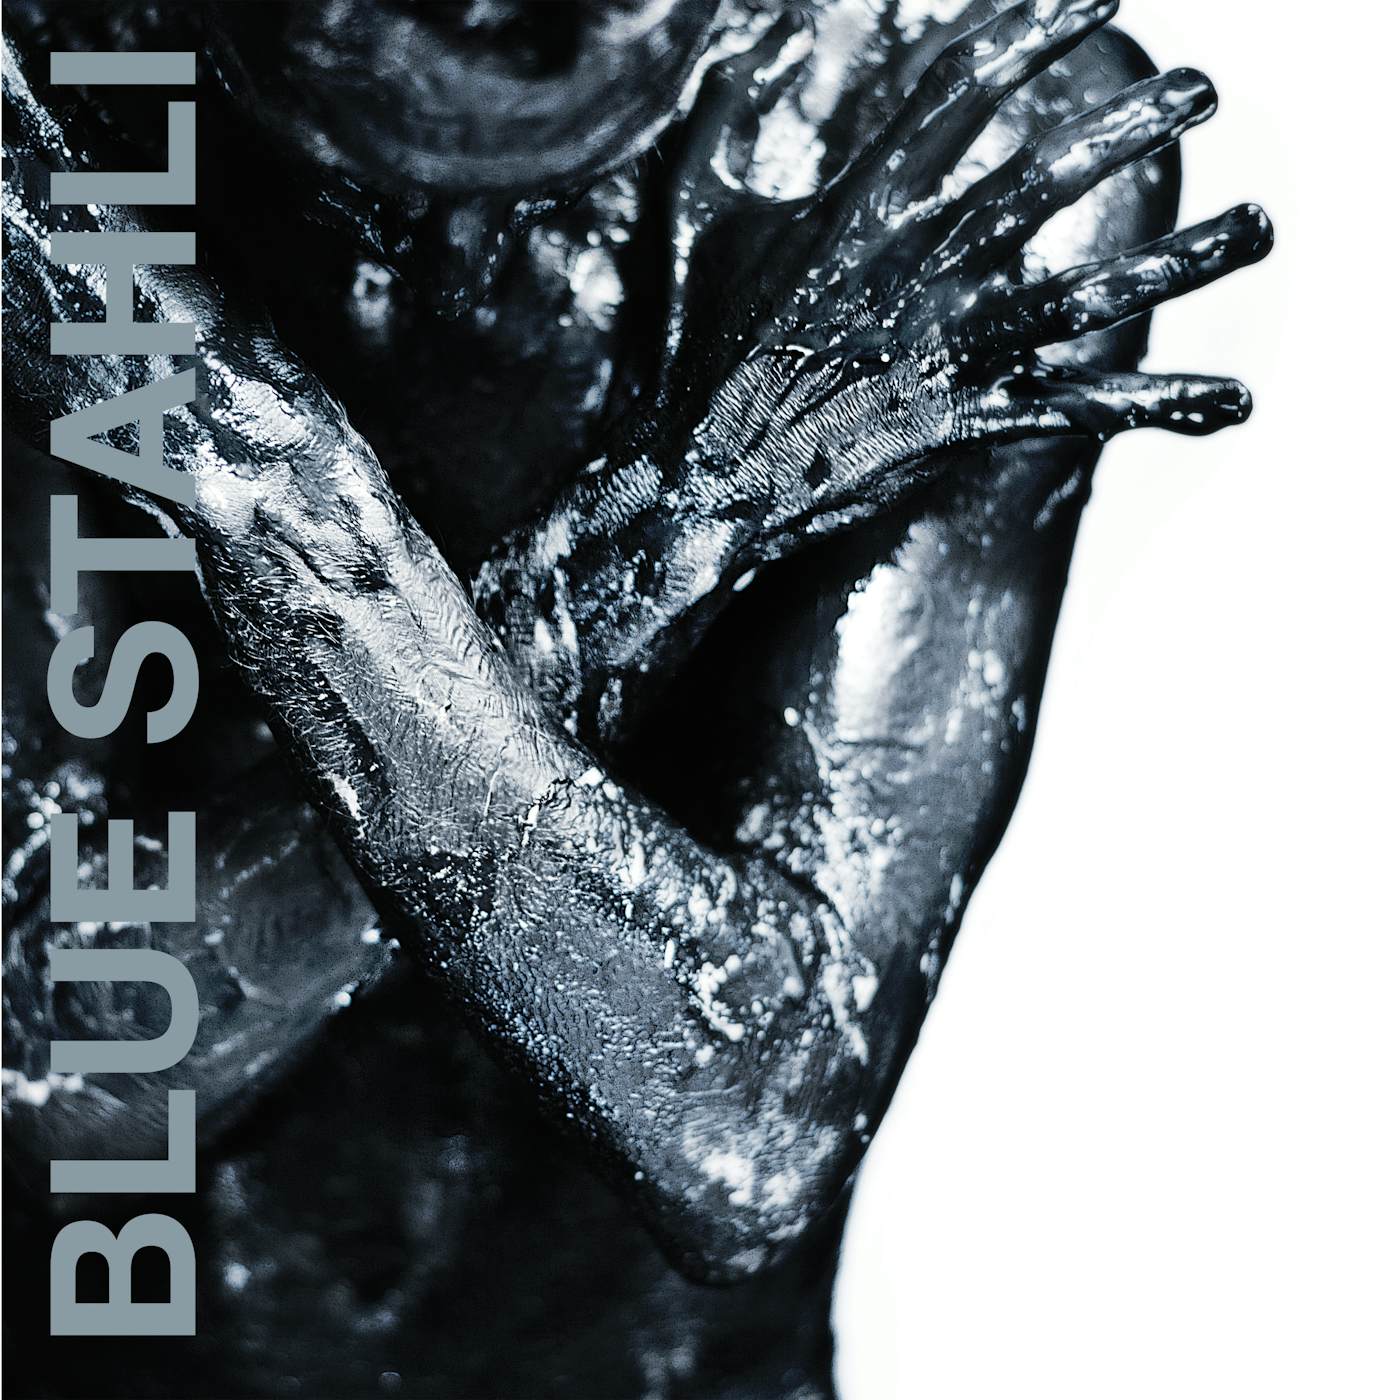 Blue Stahli Vinyl Record